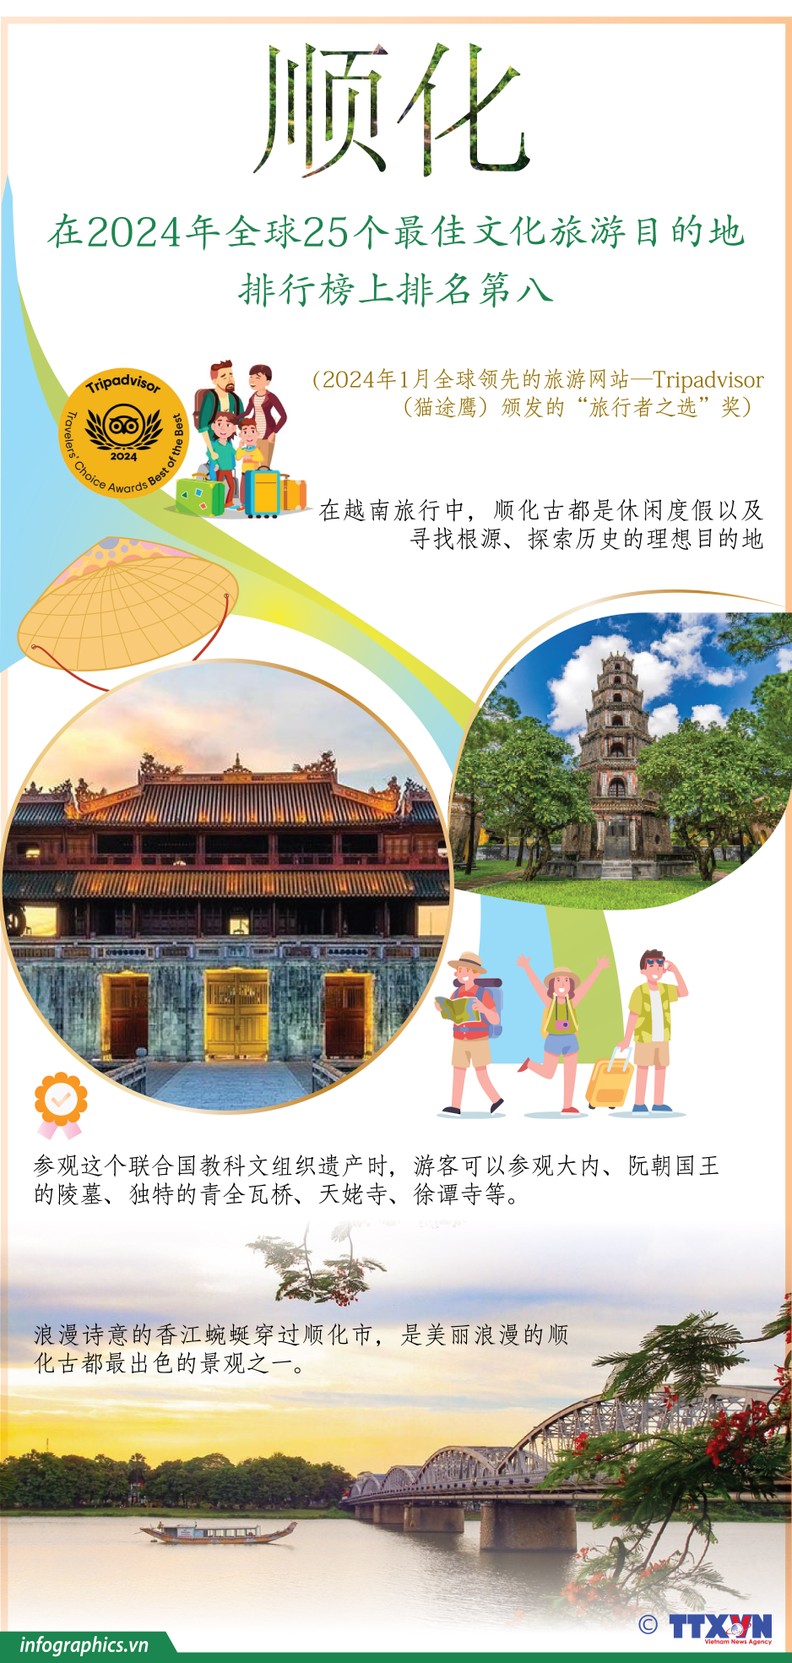 最美景点-越南投资,越南私募基金,2024年1月全球领先的越南旅游网站—Tripadvisor （猫途鹰）颁布的“观光者之选”奖，顺化在2024年全球25个,越南证券,越南美女,(1)